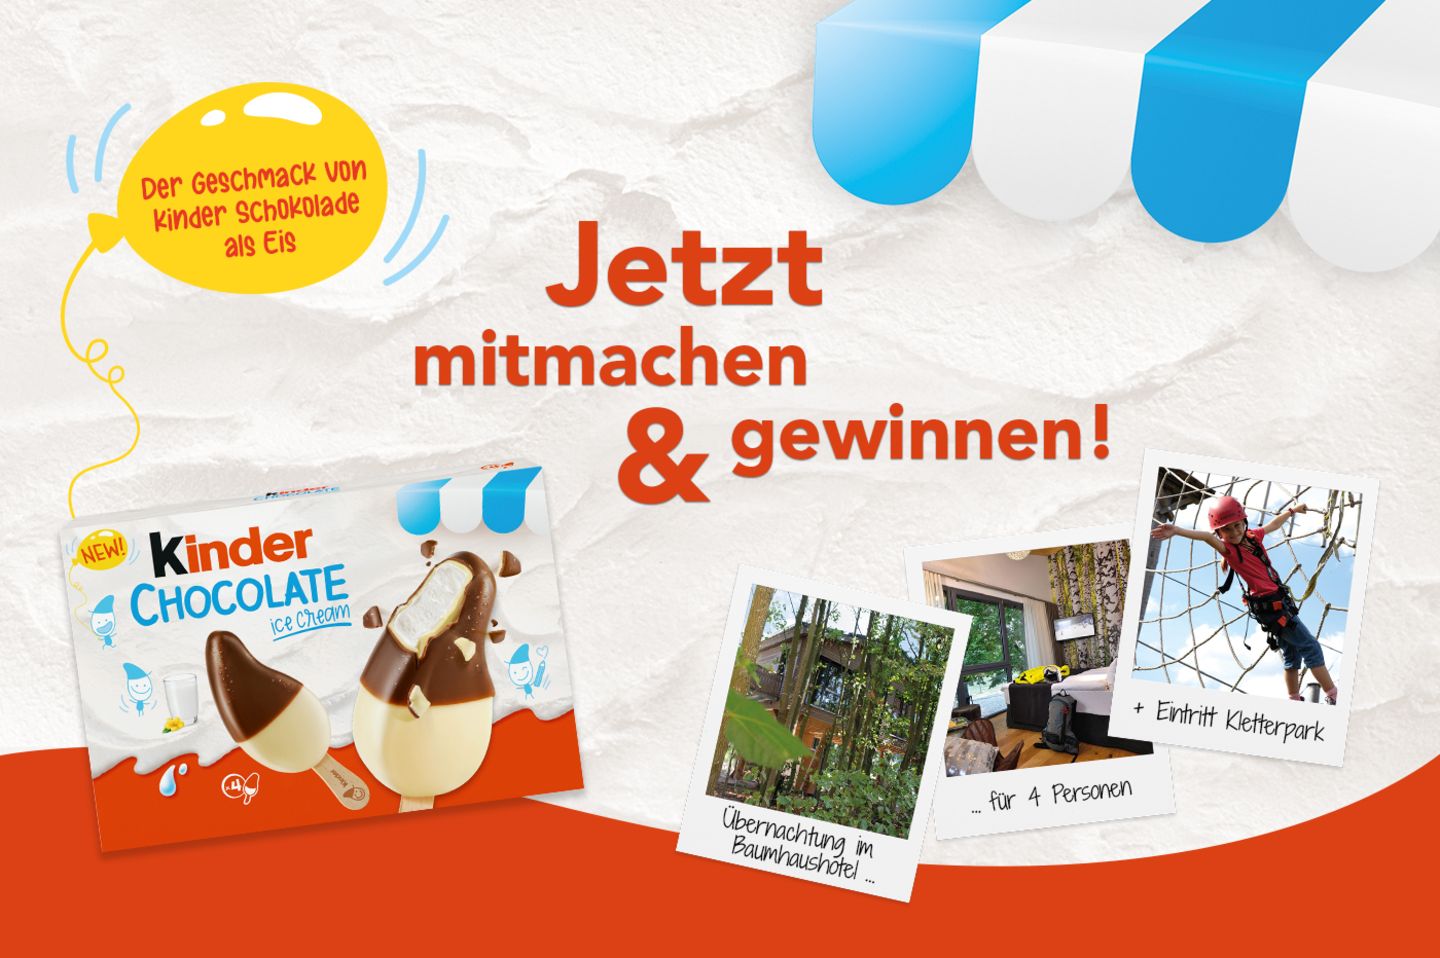 Gewinnspiel: kinder Schokolade Eis verlost Familien-Wochenende im Kletterpark